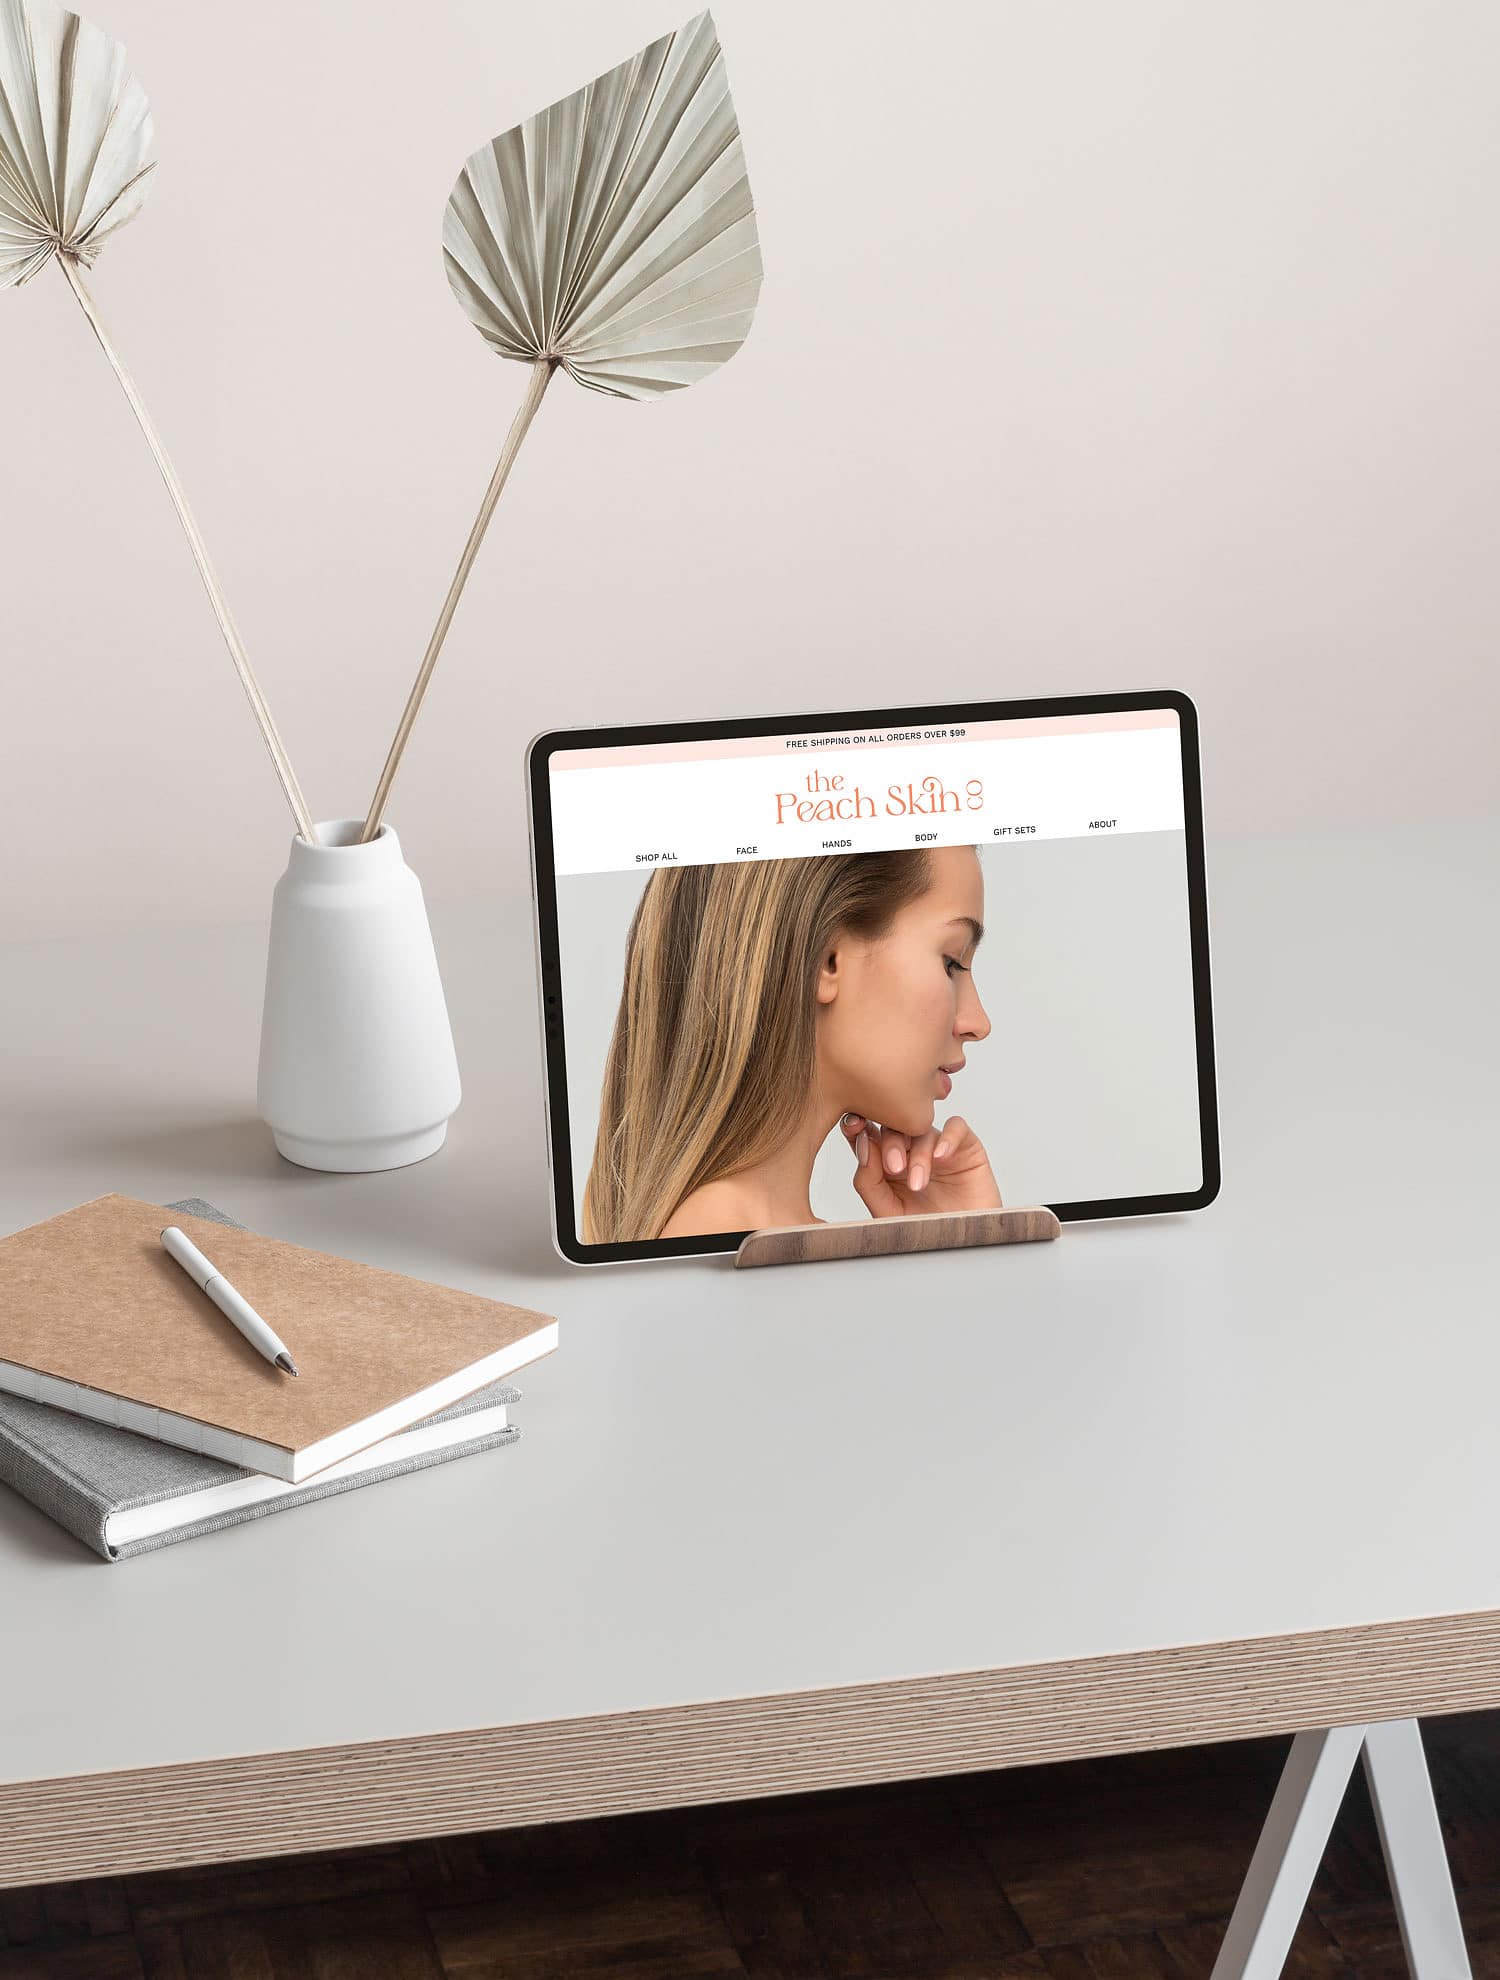 peach skin care website design ipad